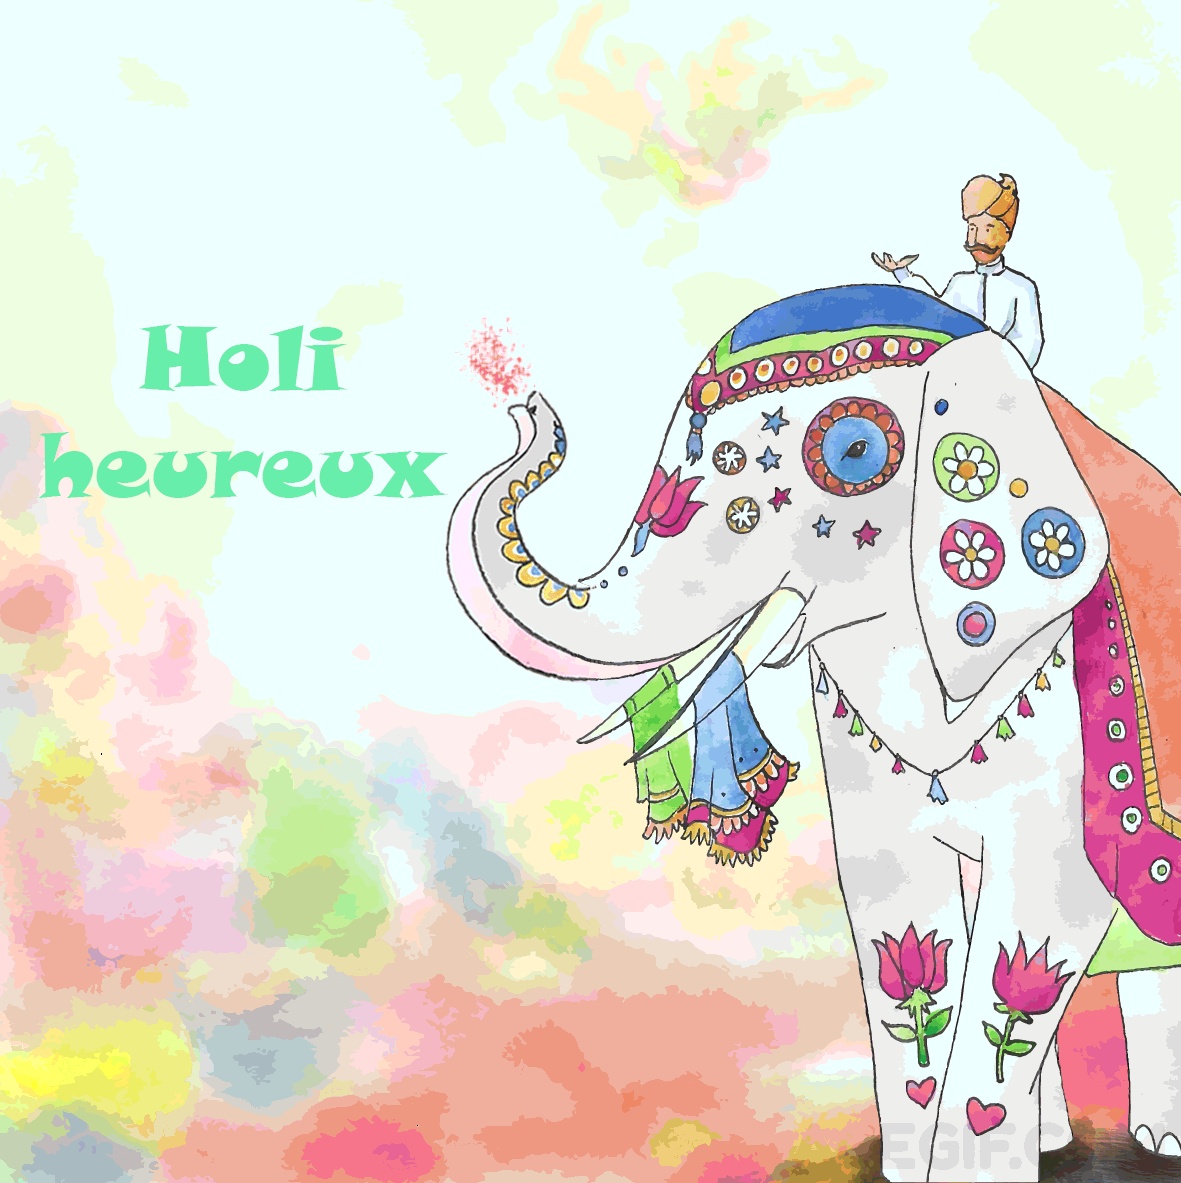 Holi heureux GIFs - Cartes de vœux animées pour Holi